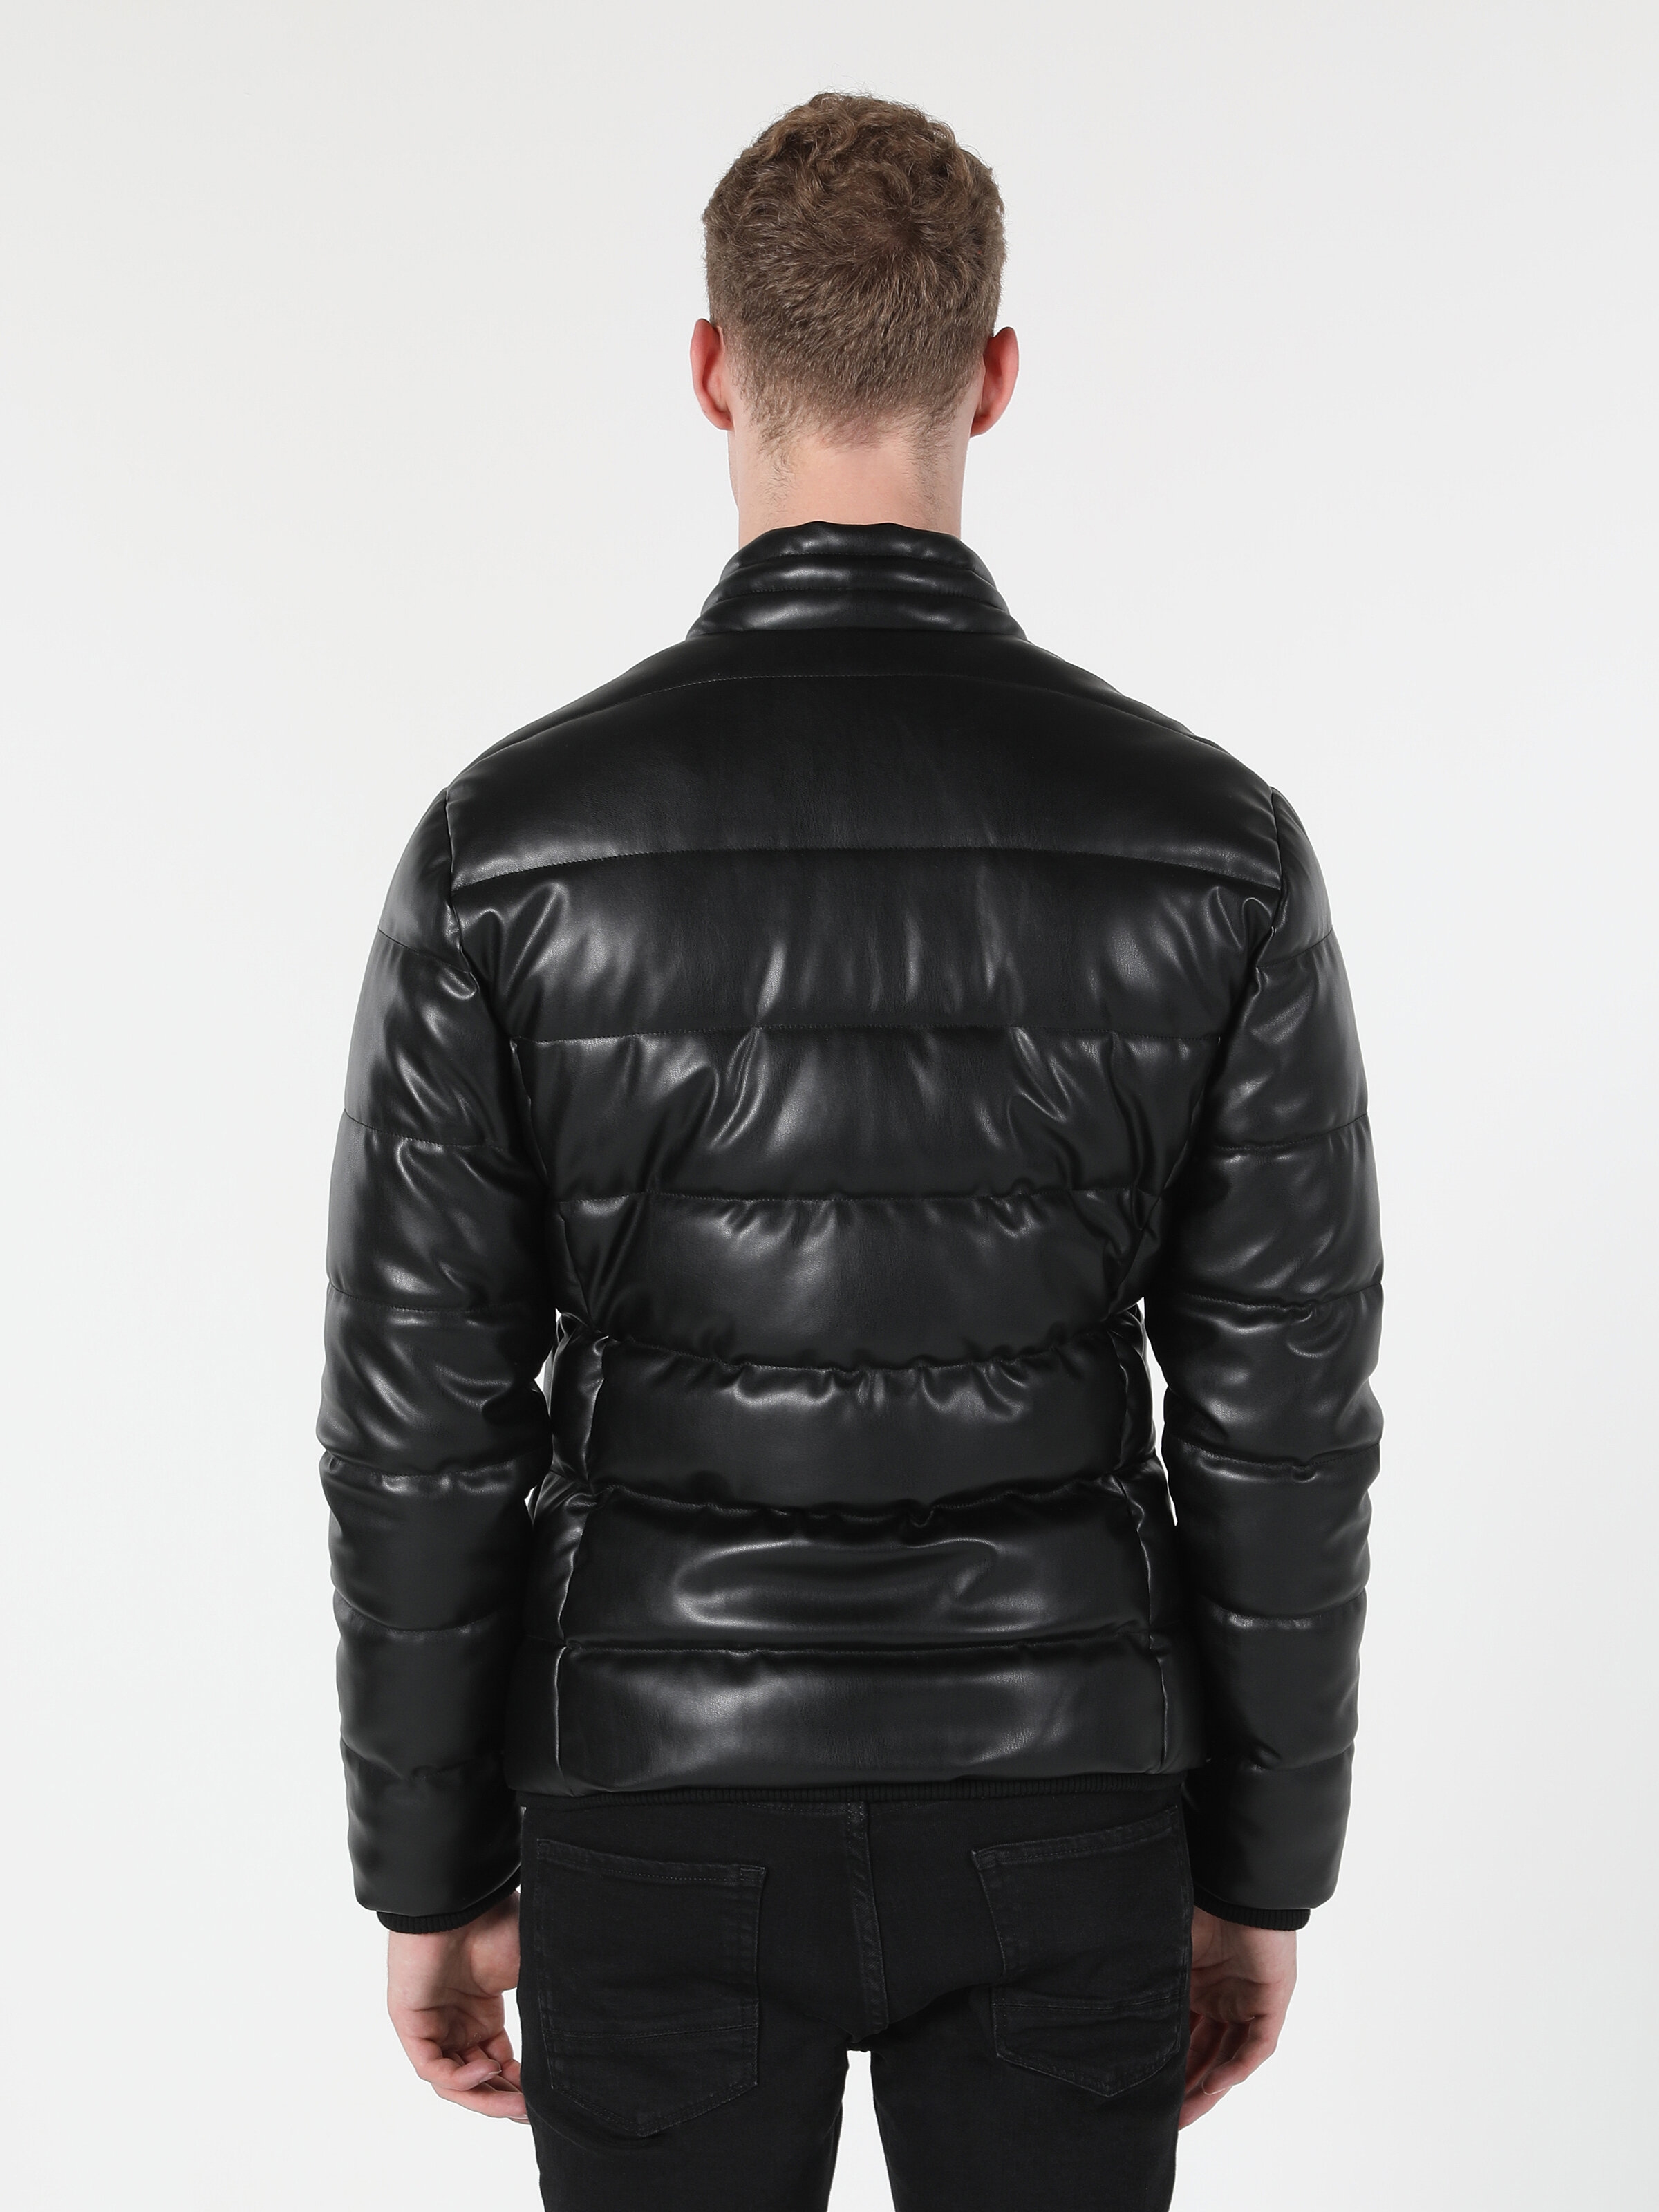 Afficher les détails de Manteau En Simili Cuir Pour Hommes Noir Gonflable Coupe Ajustée Pu